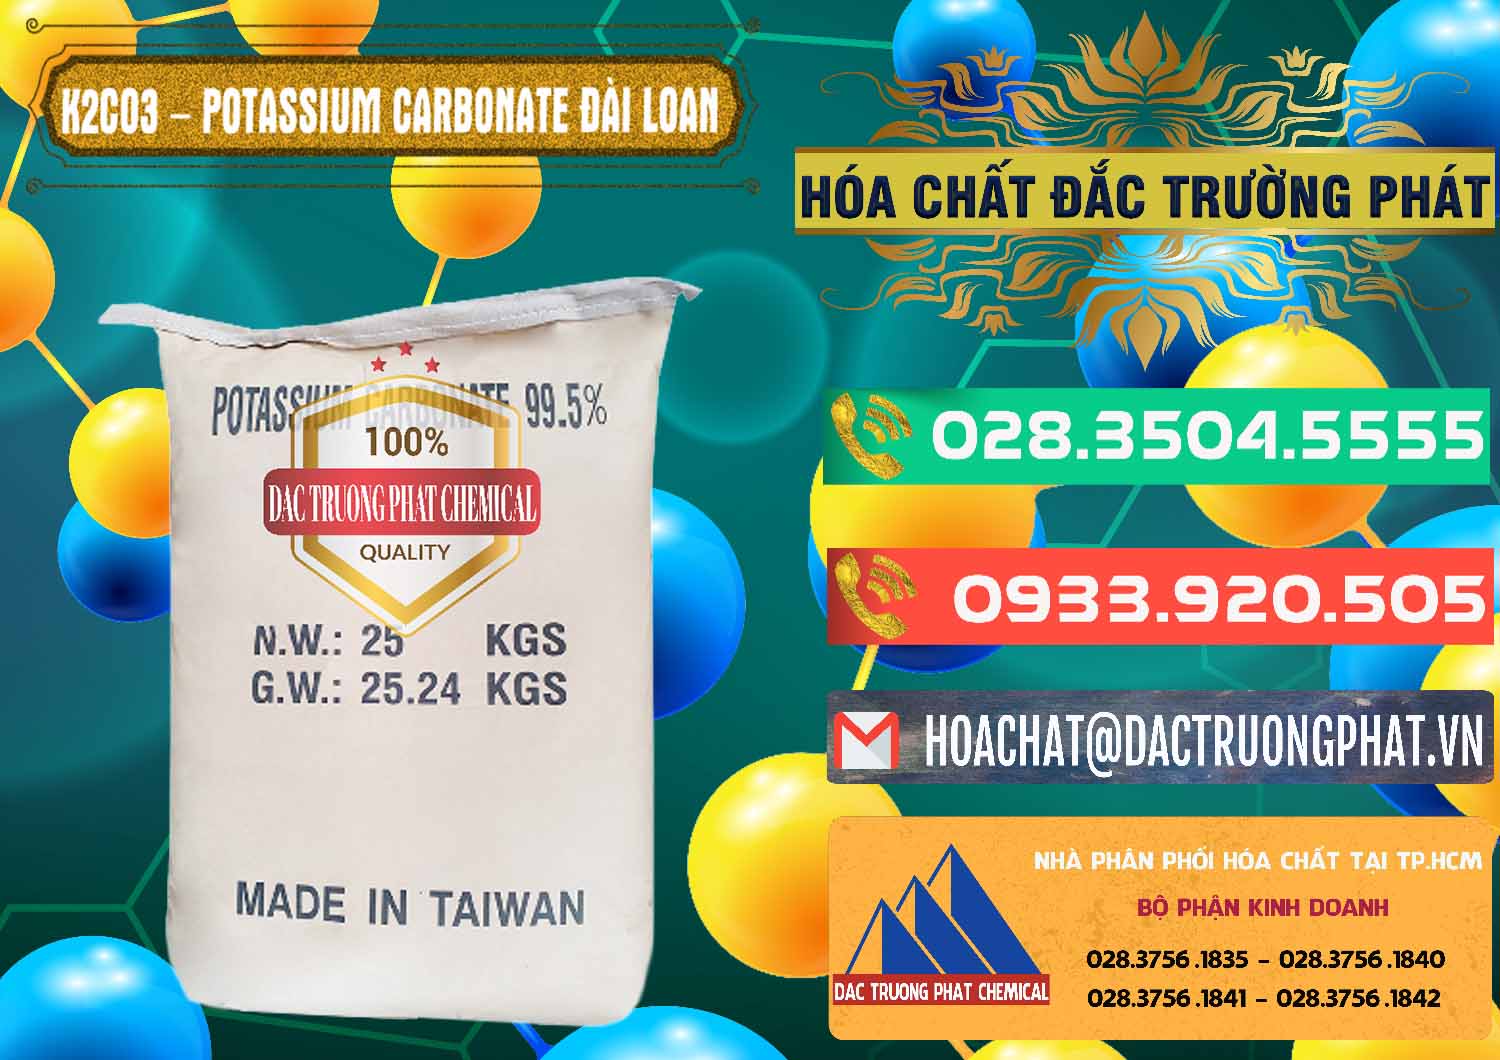 Cty chuyên bán _ cung cấp K2Co3 – Potassium Carbonate Đài Loan Taiwan - 0474 - Nơi chuyên bán - cung cấp hóa chất tại TP.HCM - congtyhoachat.com.vn